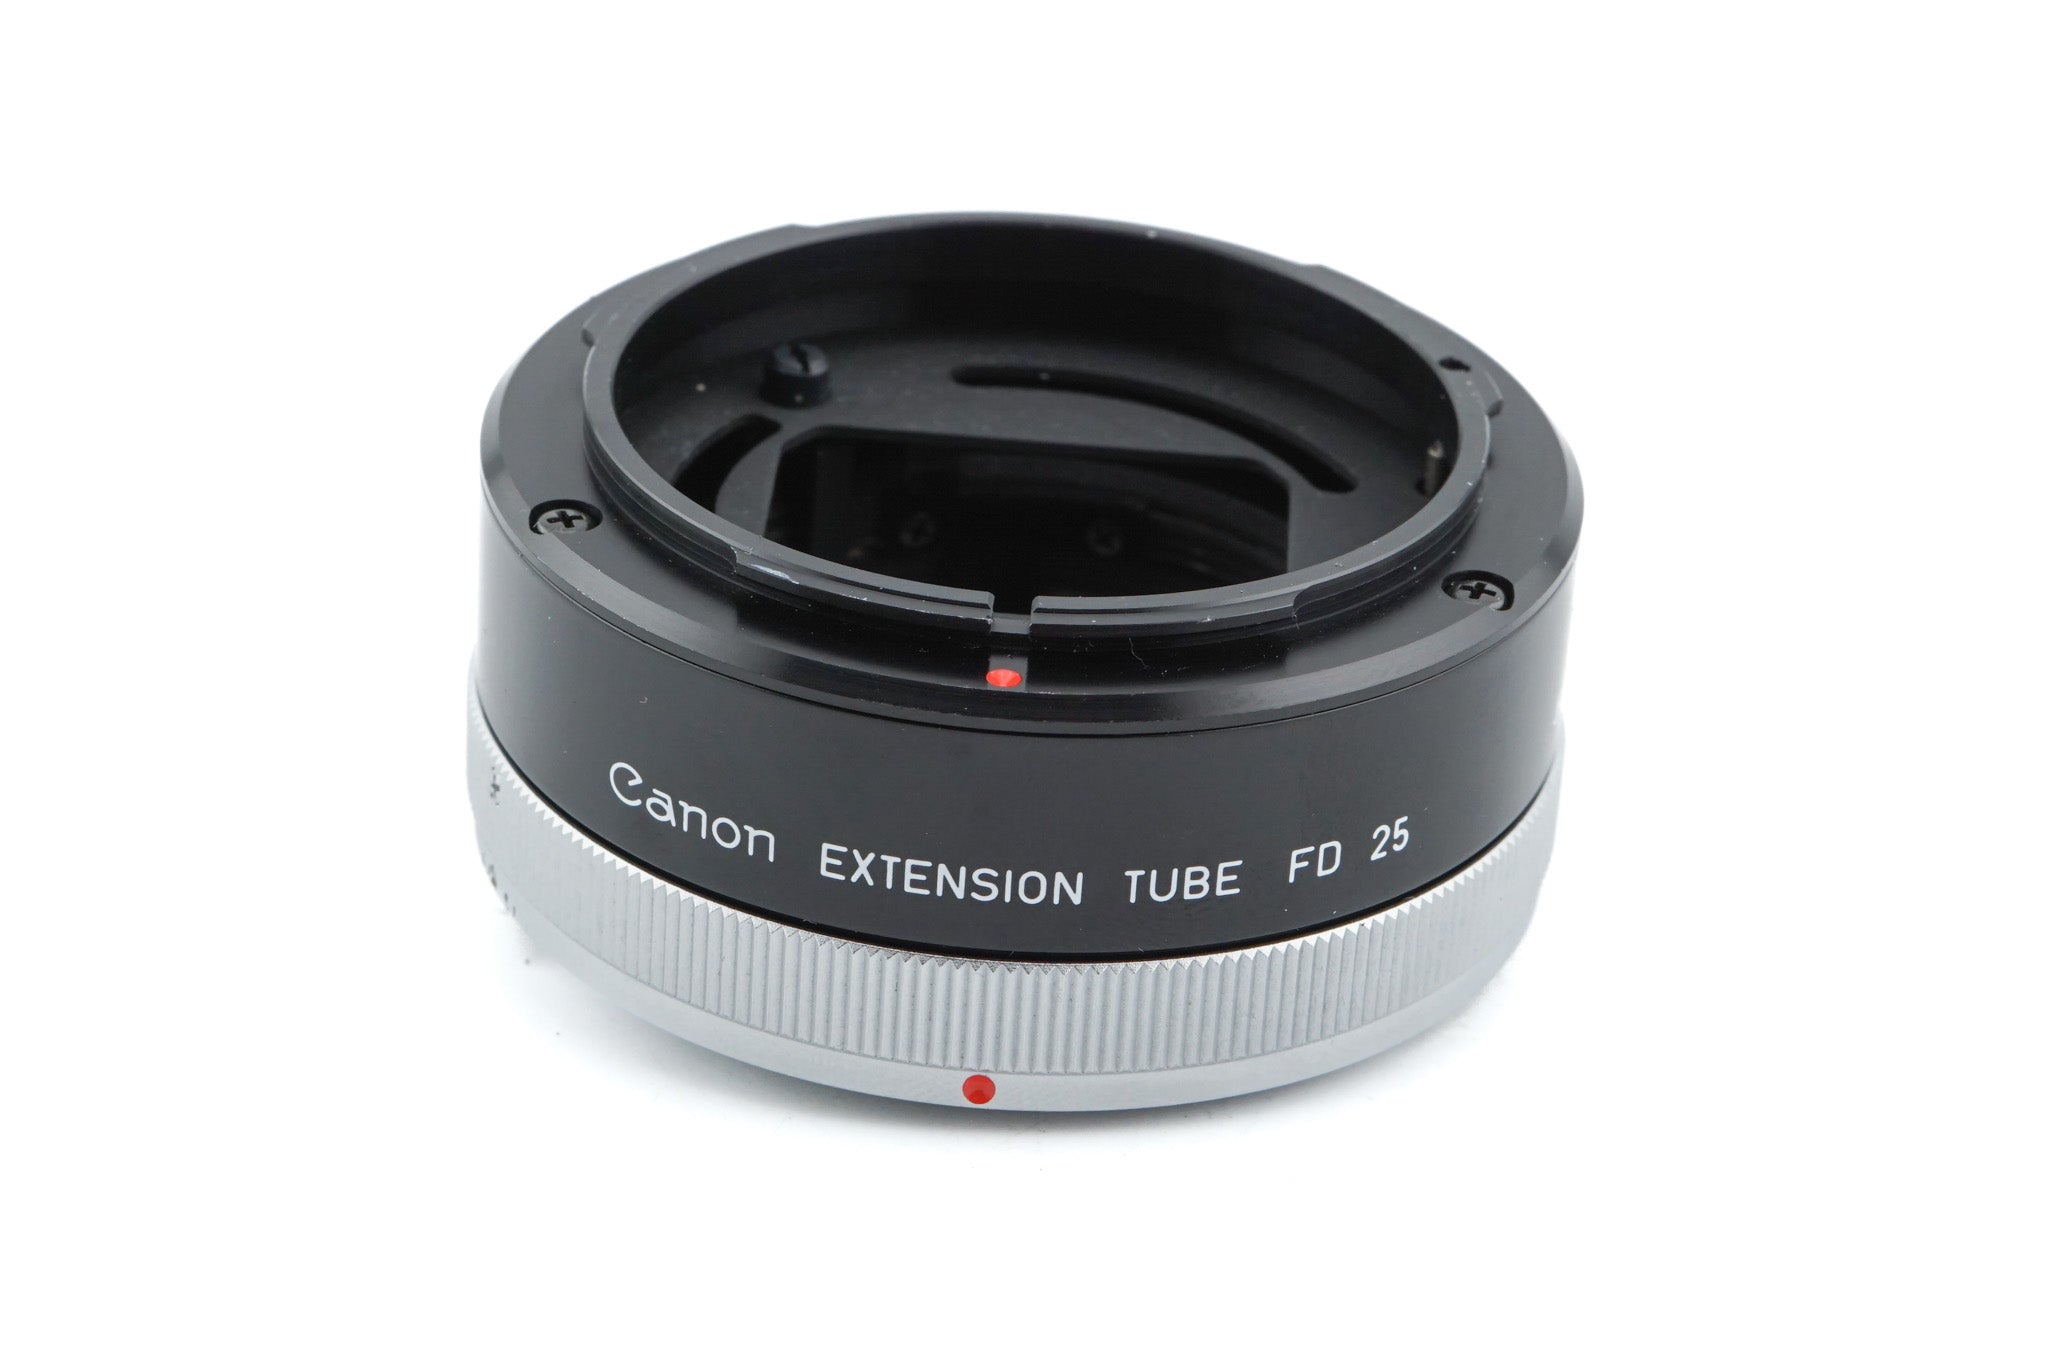 Canon Extension Tube FD 25 - Accessory